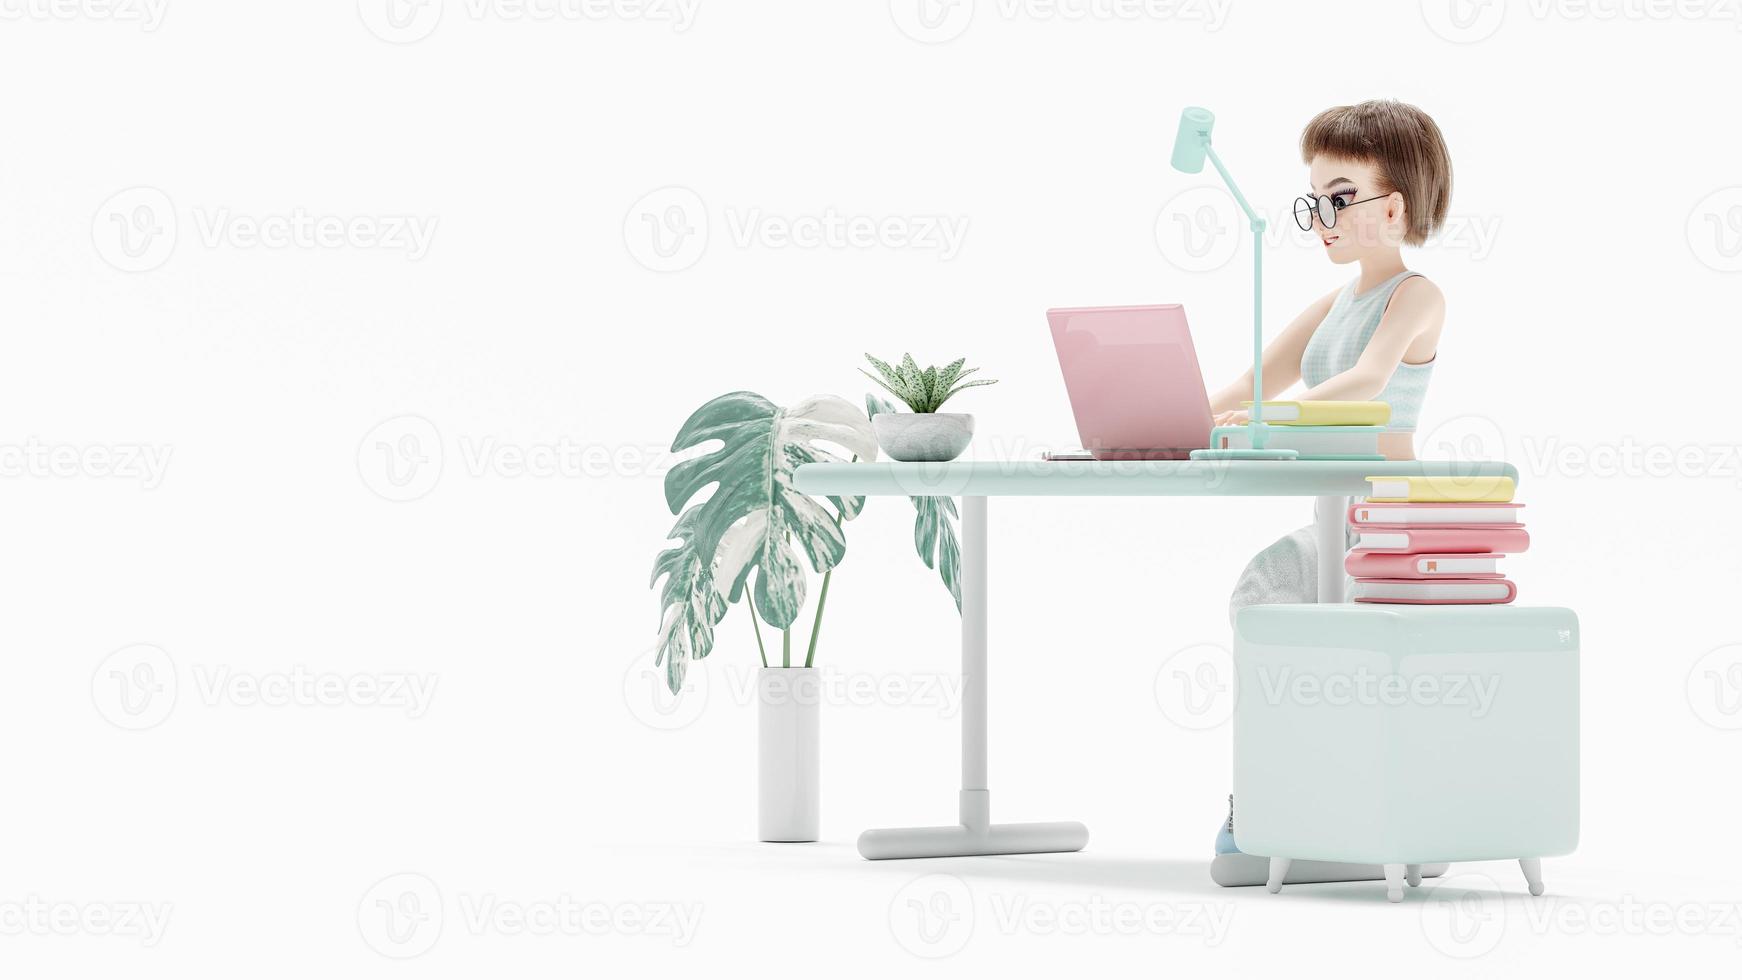 jovem feliz sentada na cadeira. gosta de estudar, aprender e pesquisar informações do computador. laptop rosa é colocado na mesa de trabalho. personagem de desenho animado, renderização em 3d foto